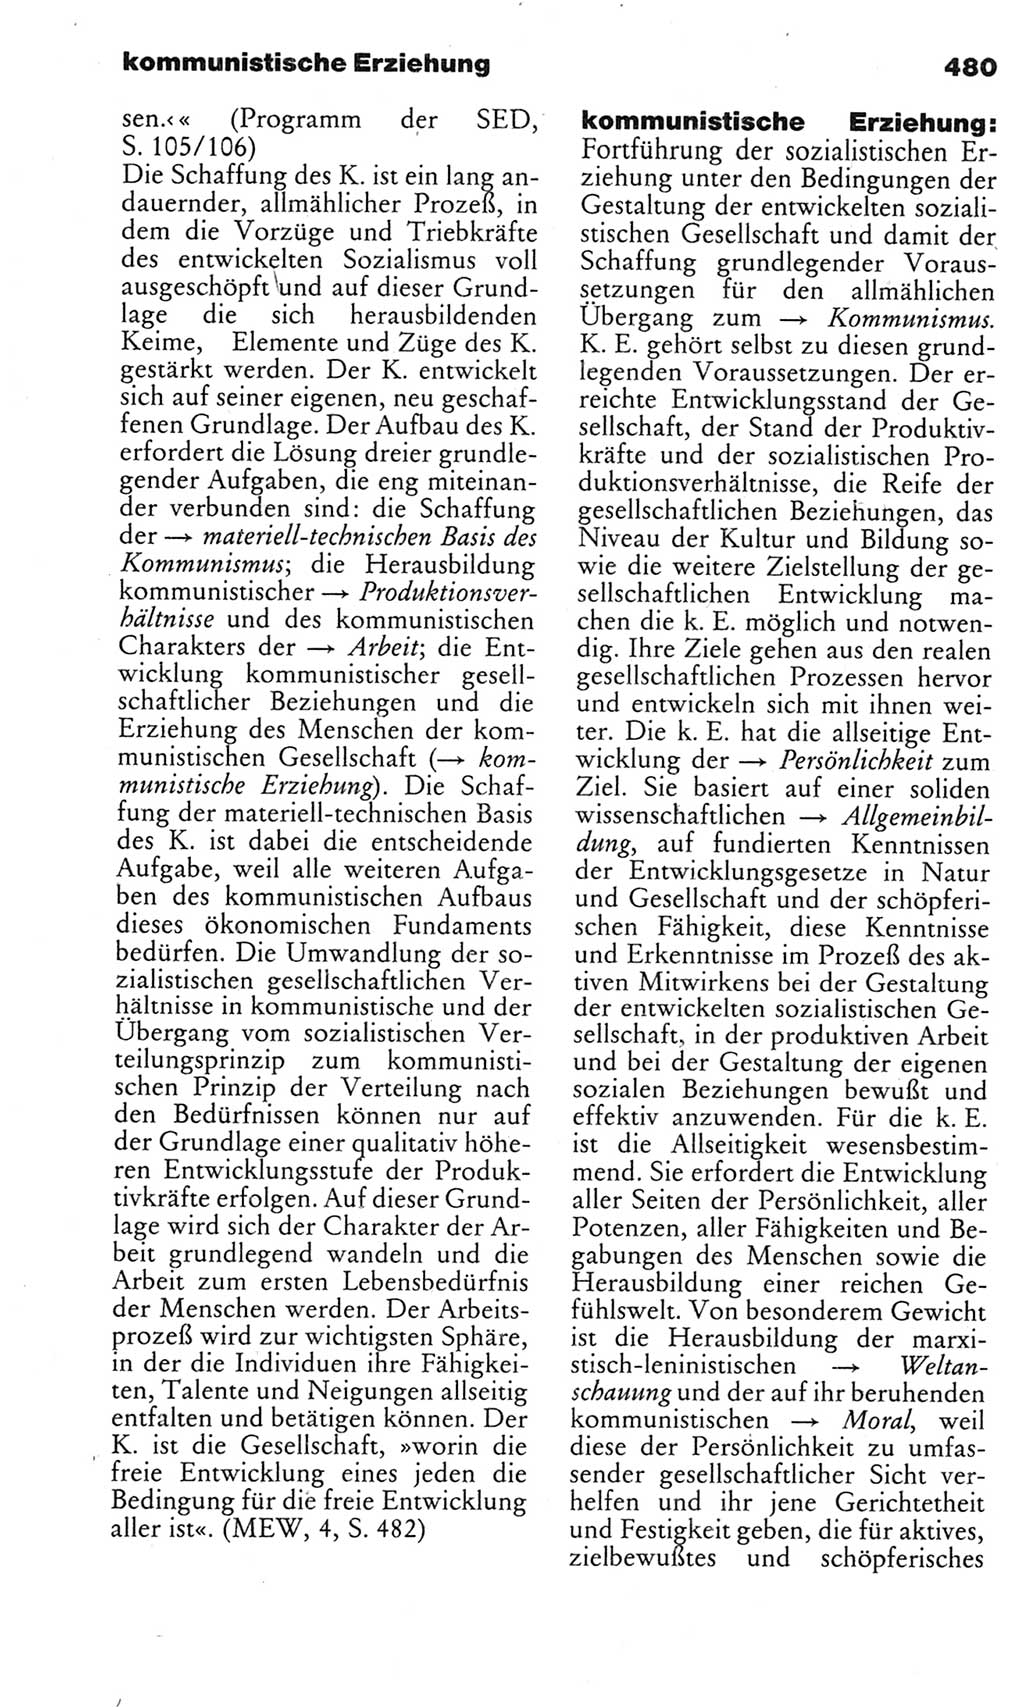 Kleines politisches Wörterbuch [Deutsche Demokratische Republik (DDR)] 1983, Seite 480 (Kl. pol. Wb. DDR 1983, S. 480)